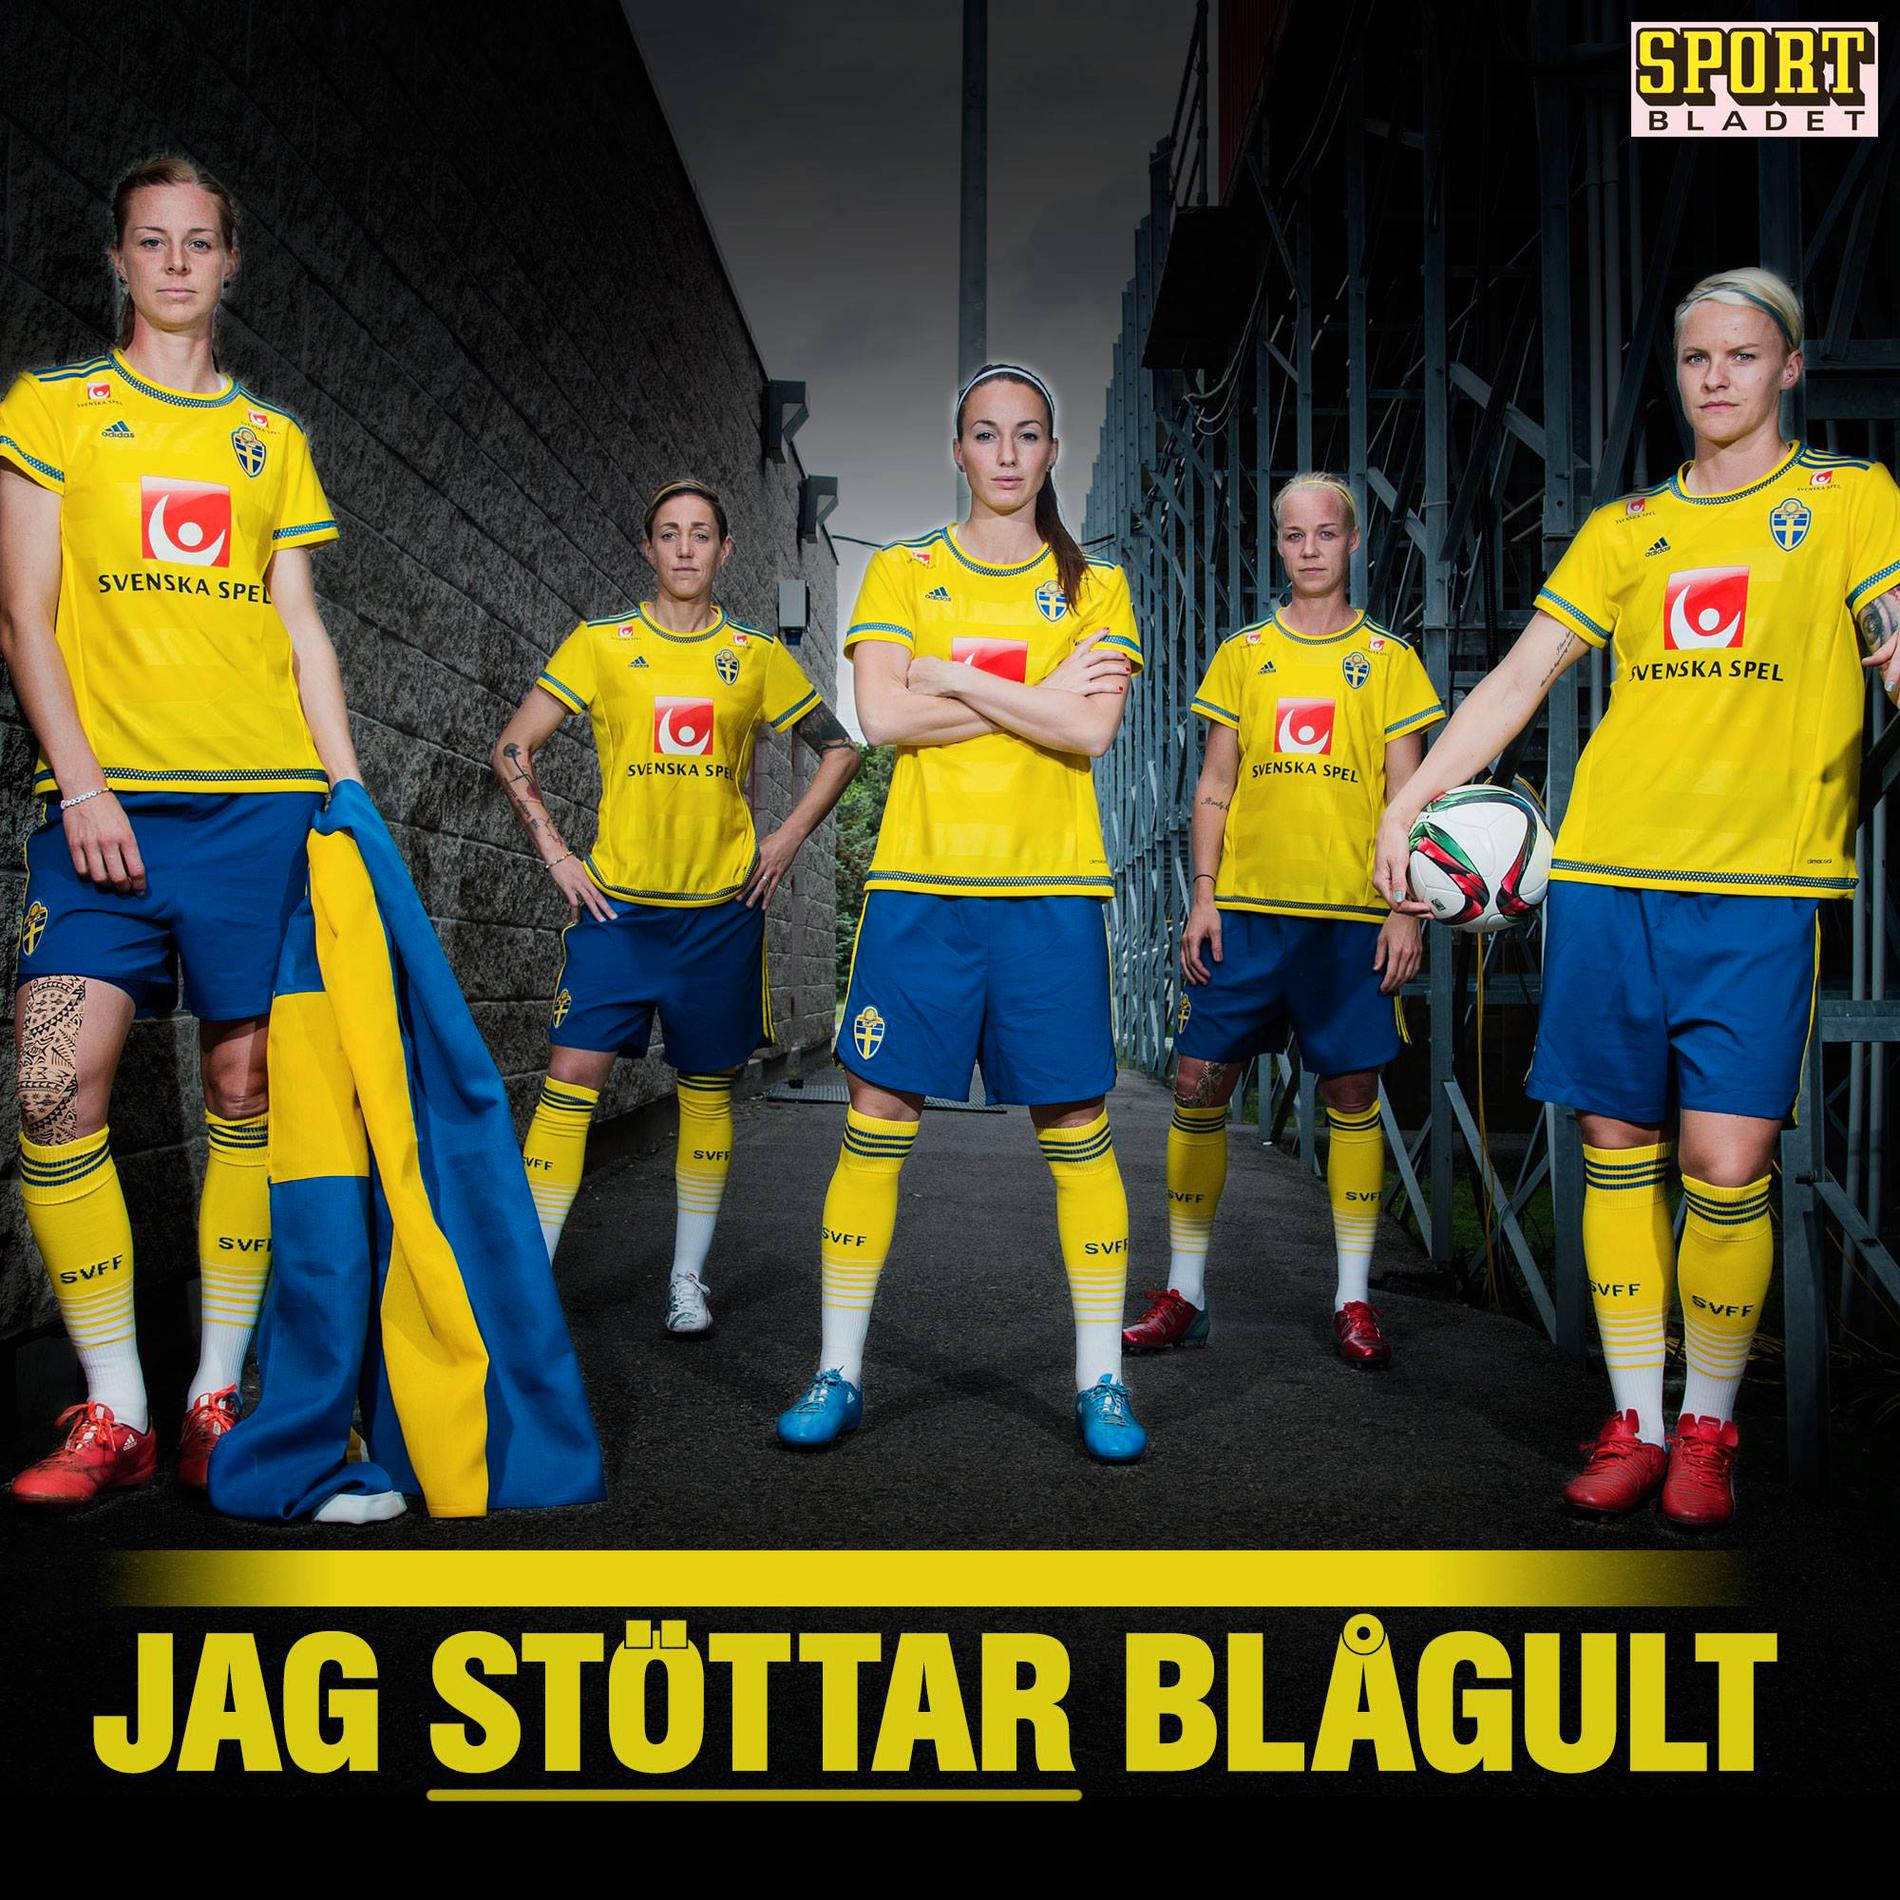 Hjälp oss att visa att nättrollen har fel. Gå in på Sportbladets Instagramkonto eller Facebooksida och dela den här bilden och visa att landslaget har svenska folkets stöd.